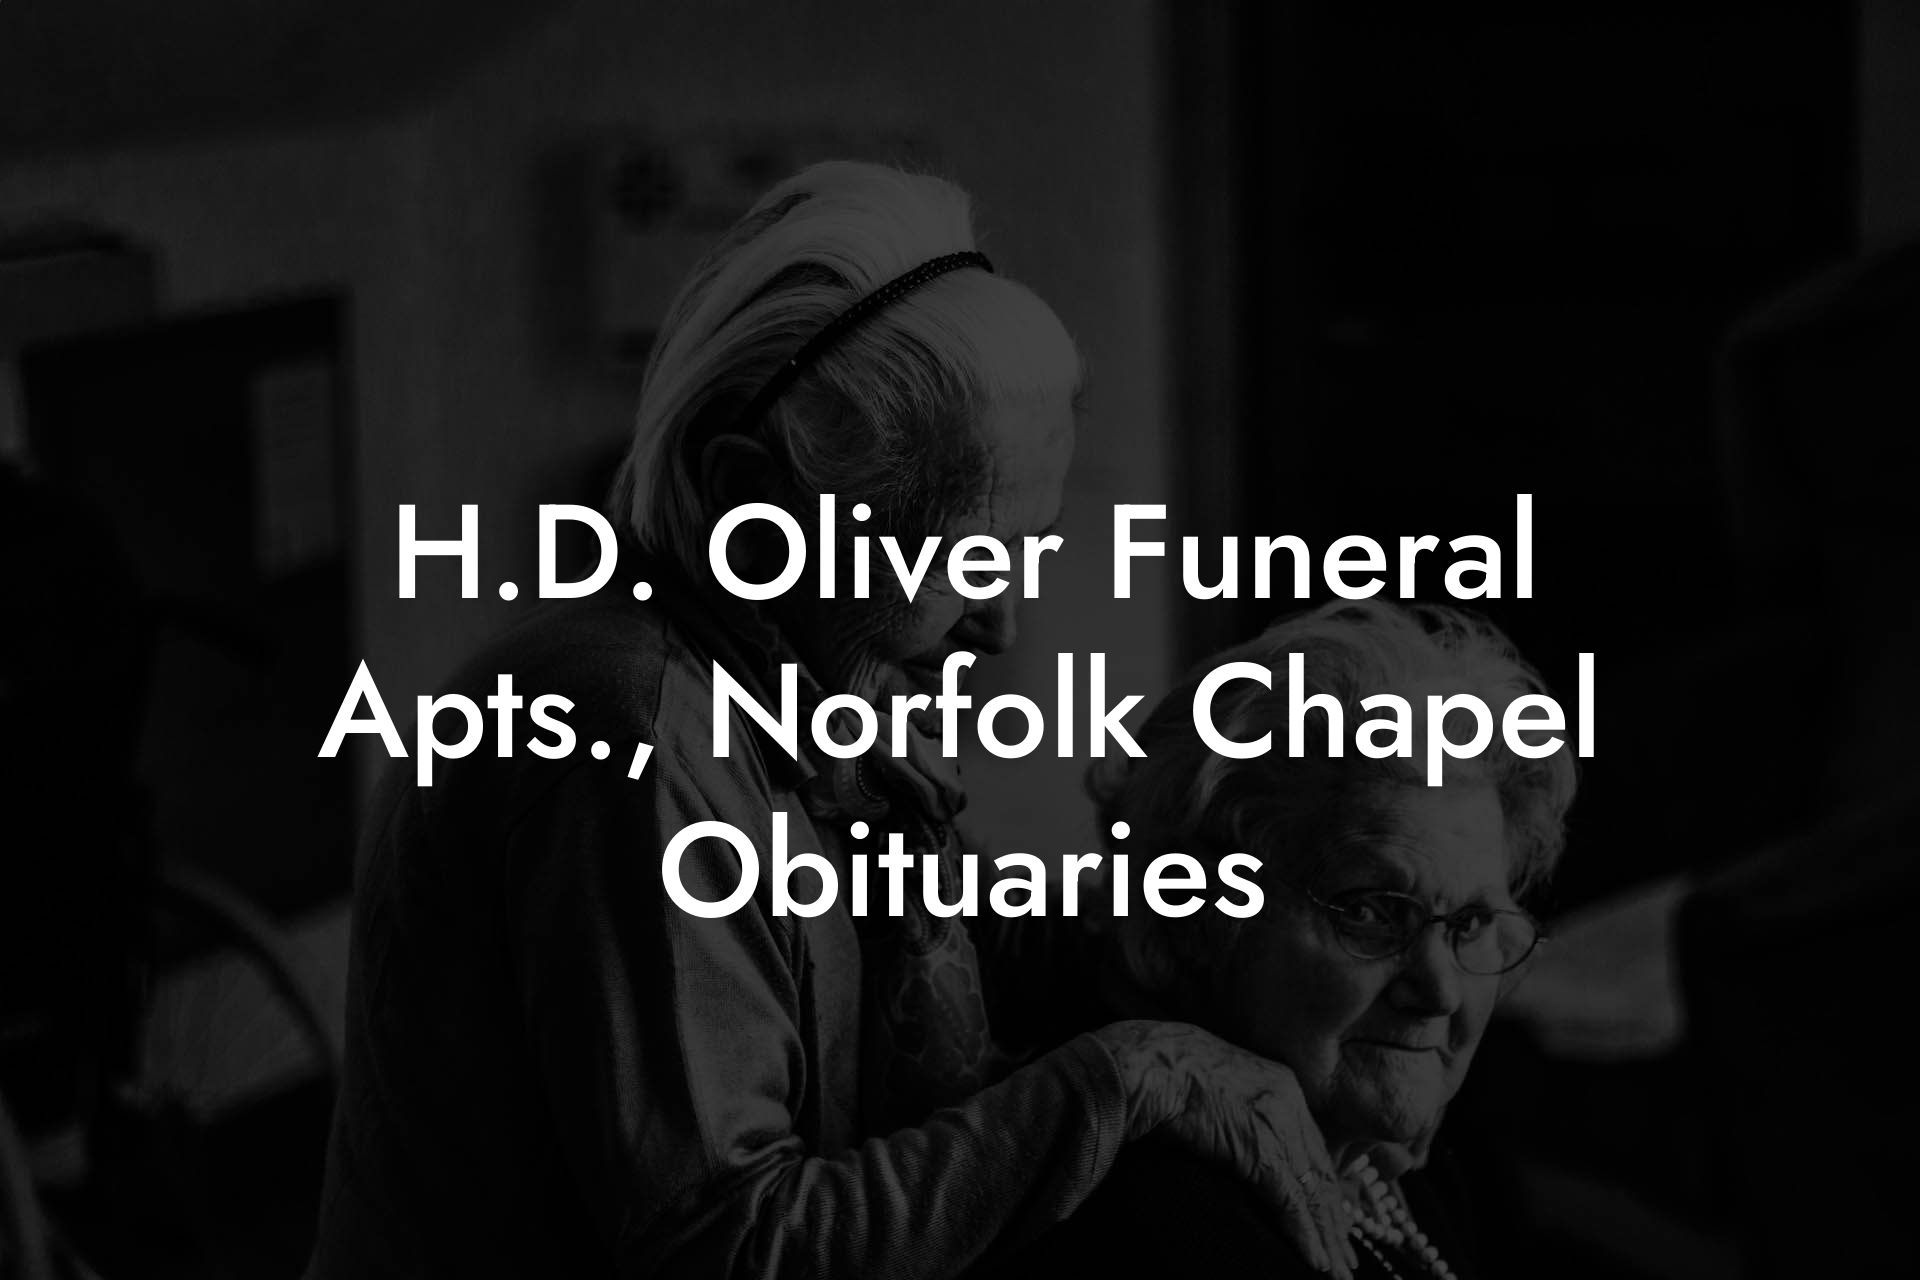 H.D. Oliver Funeral Apts., Norfolk Chapel Obituaries